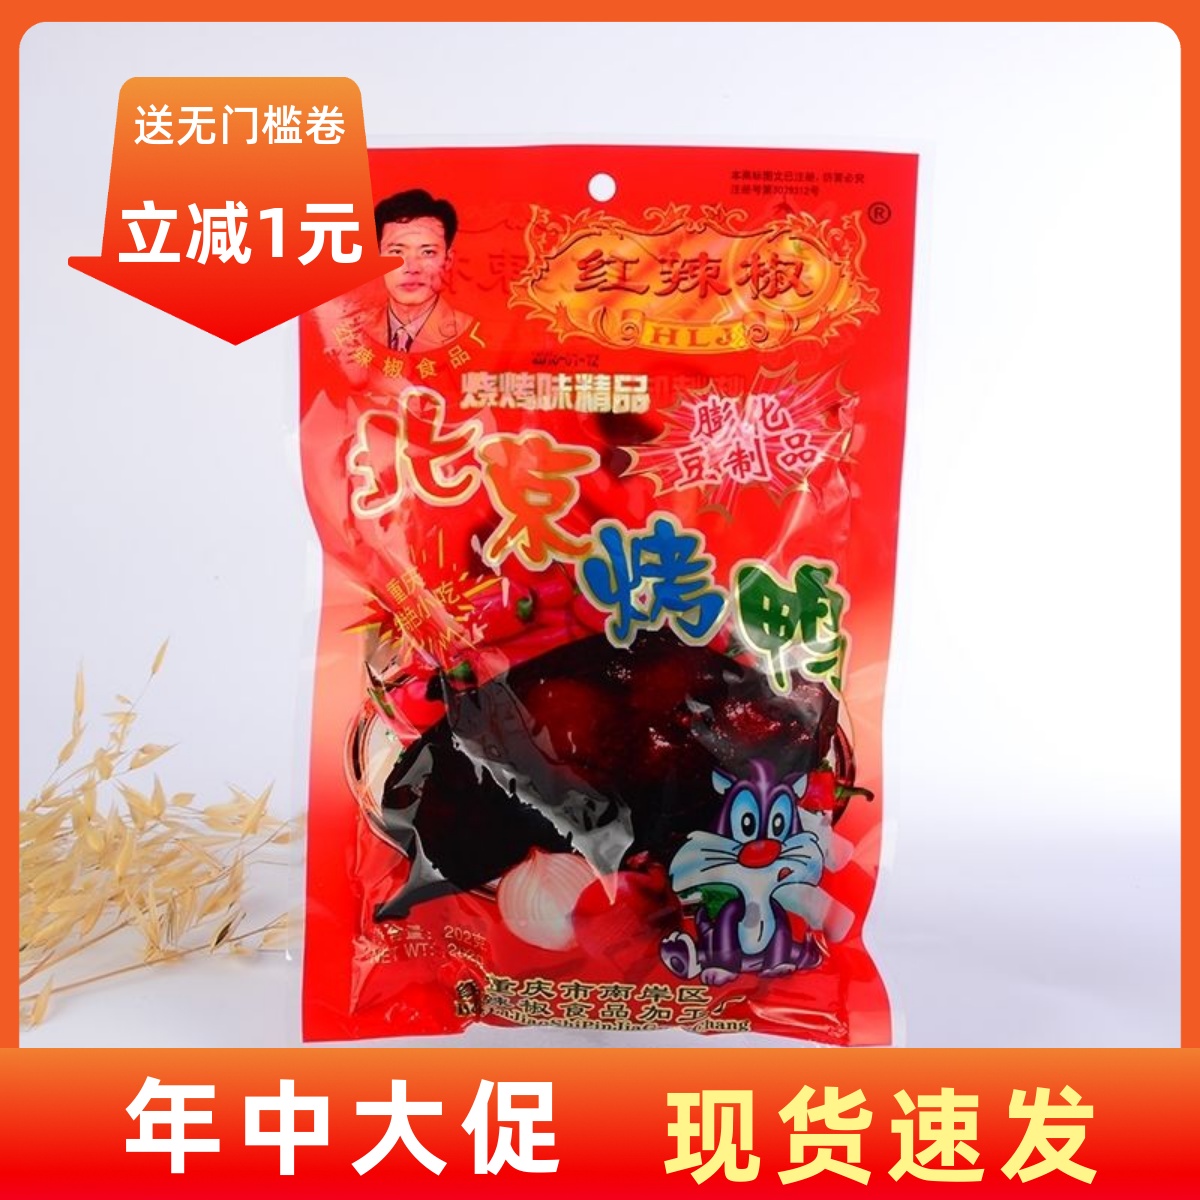 【现货即发】重庆特产红辣椒 北京烤鸭 辣条190克大包装素食 8090